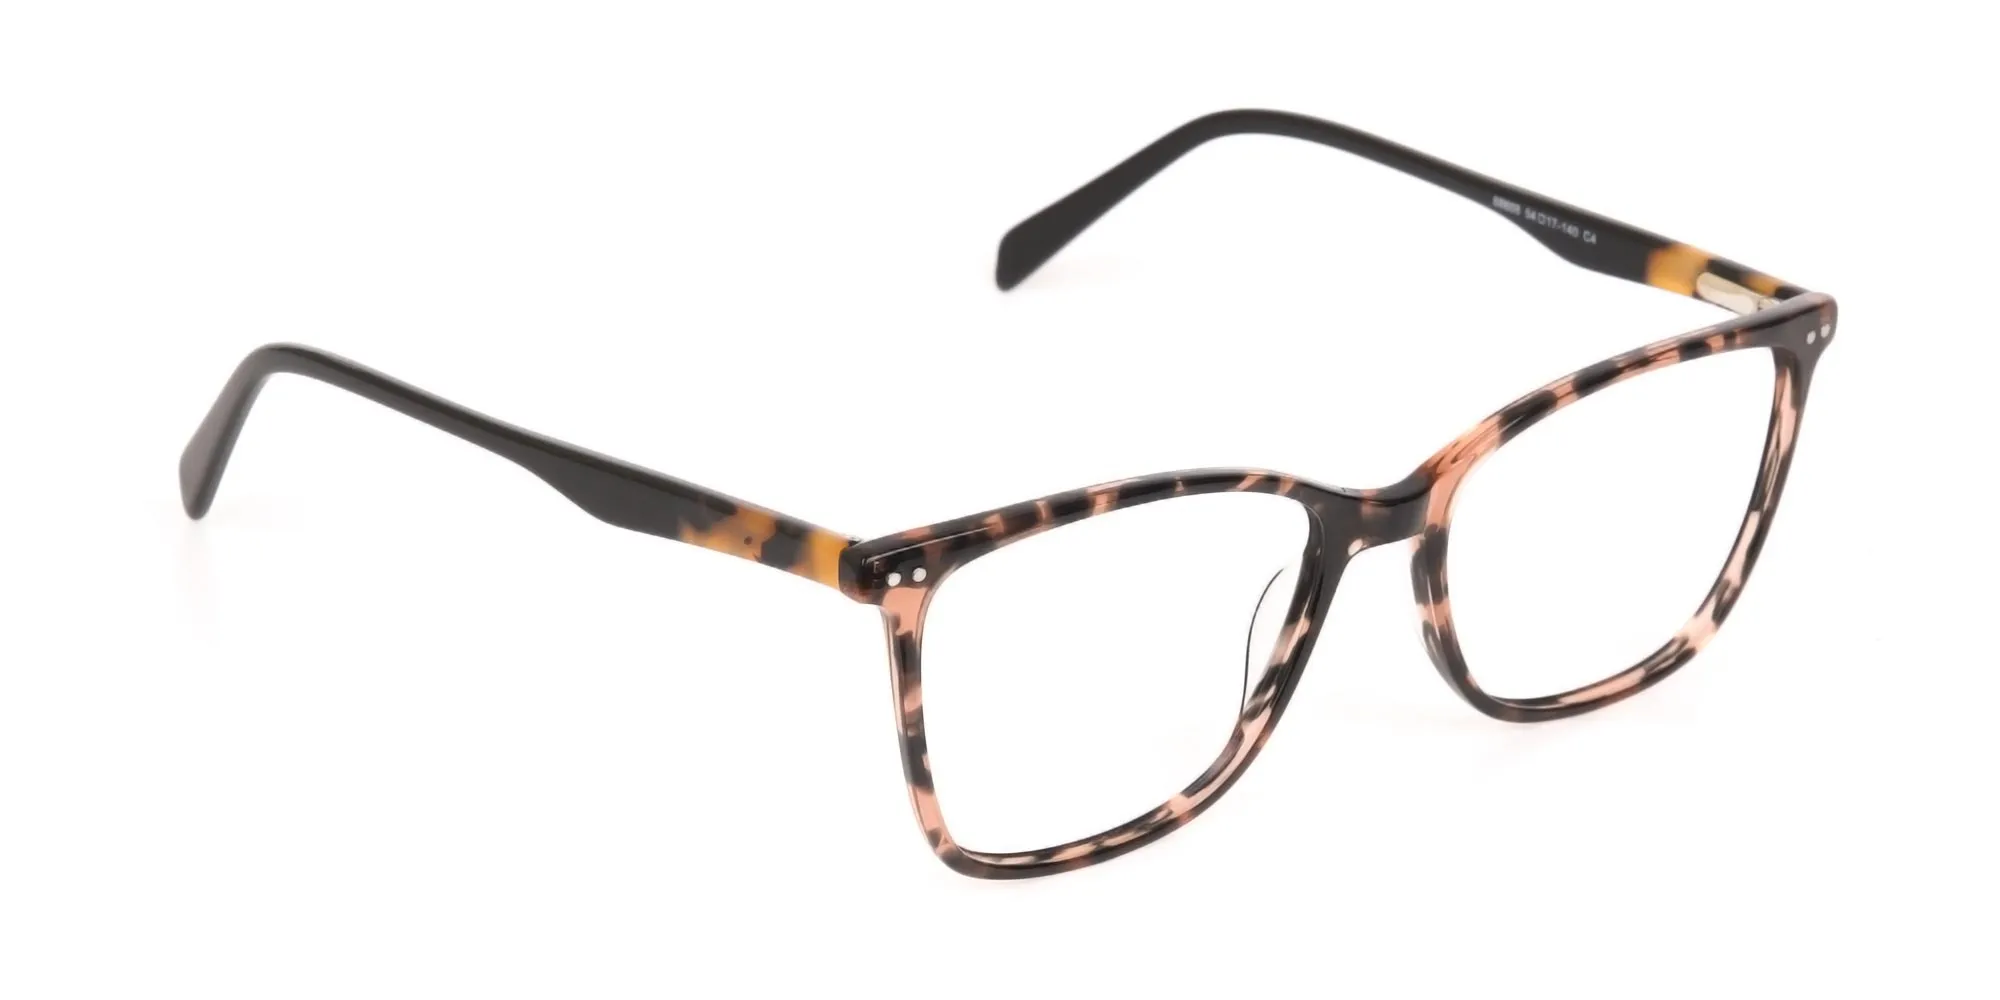 Designer Tortoiseshell Eyeglasses For Women-2